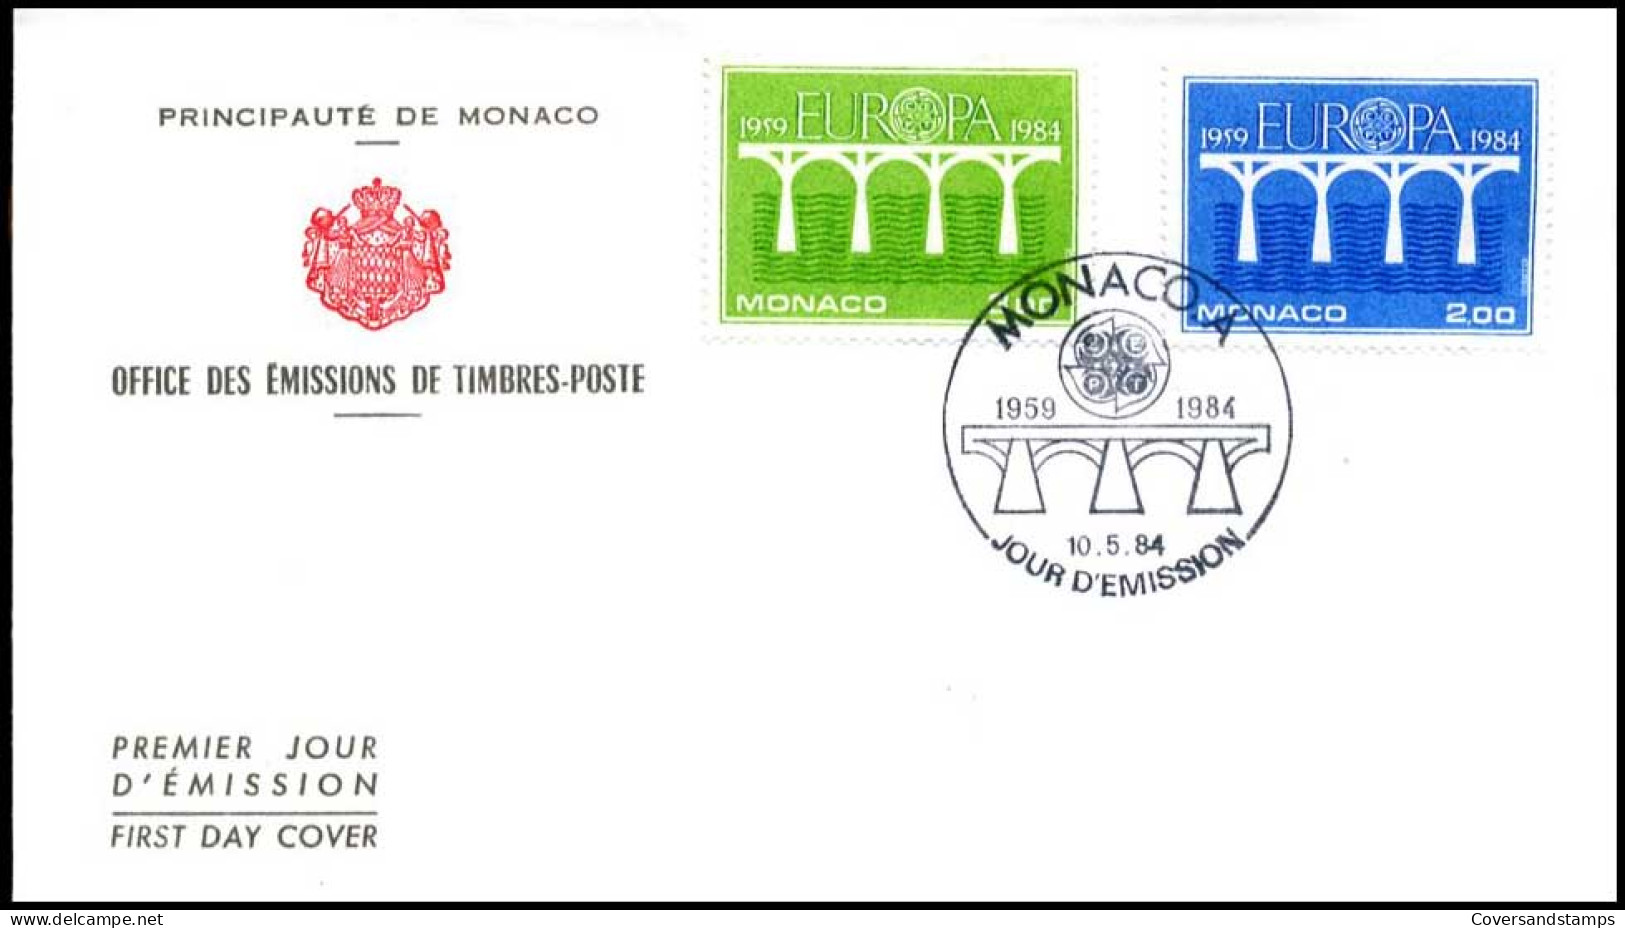  Monaco - FDC - Europa CEPT 1984 - 1984